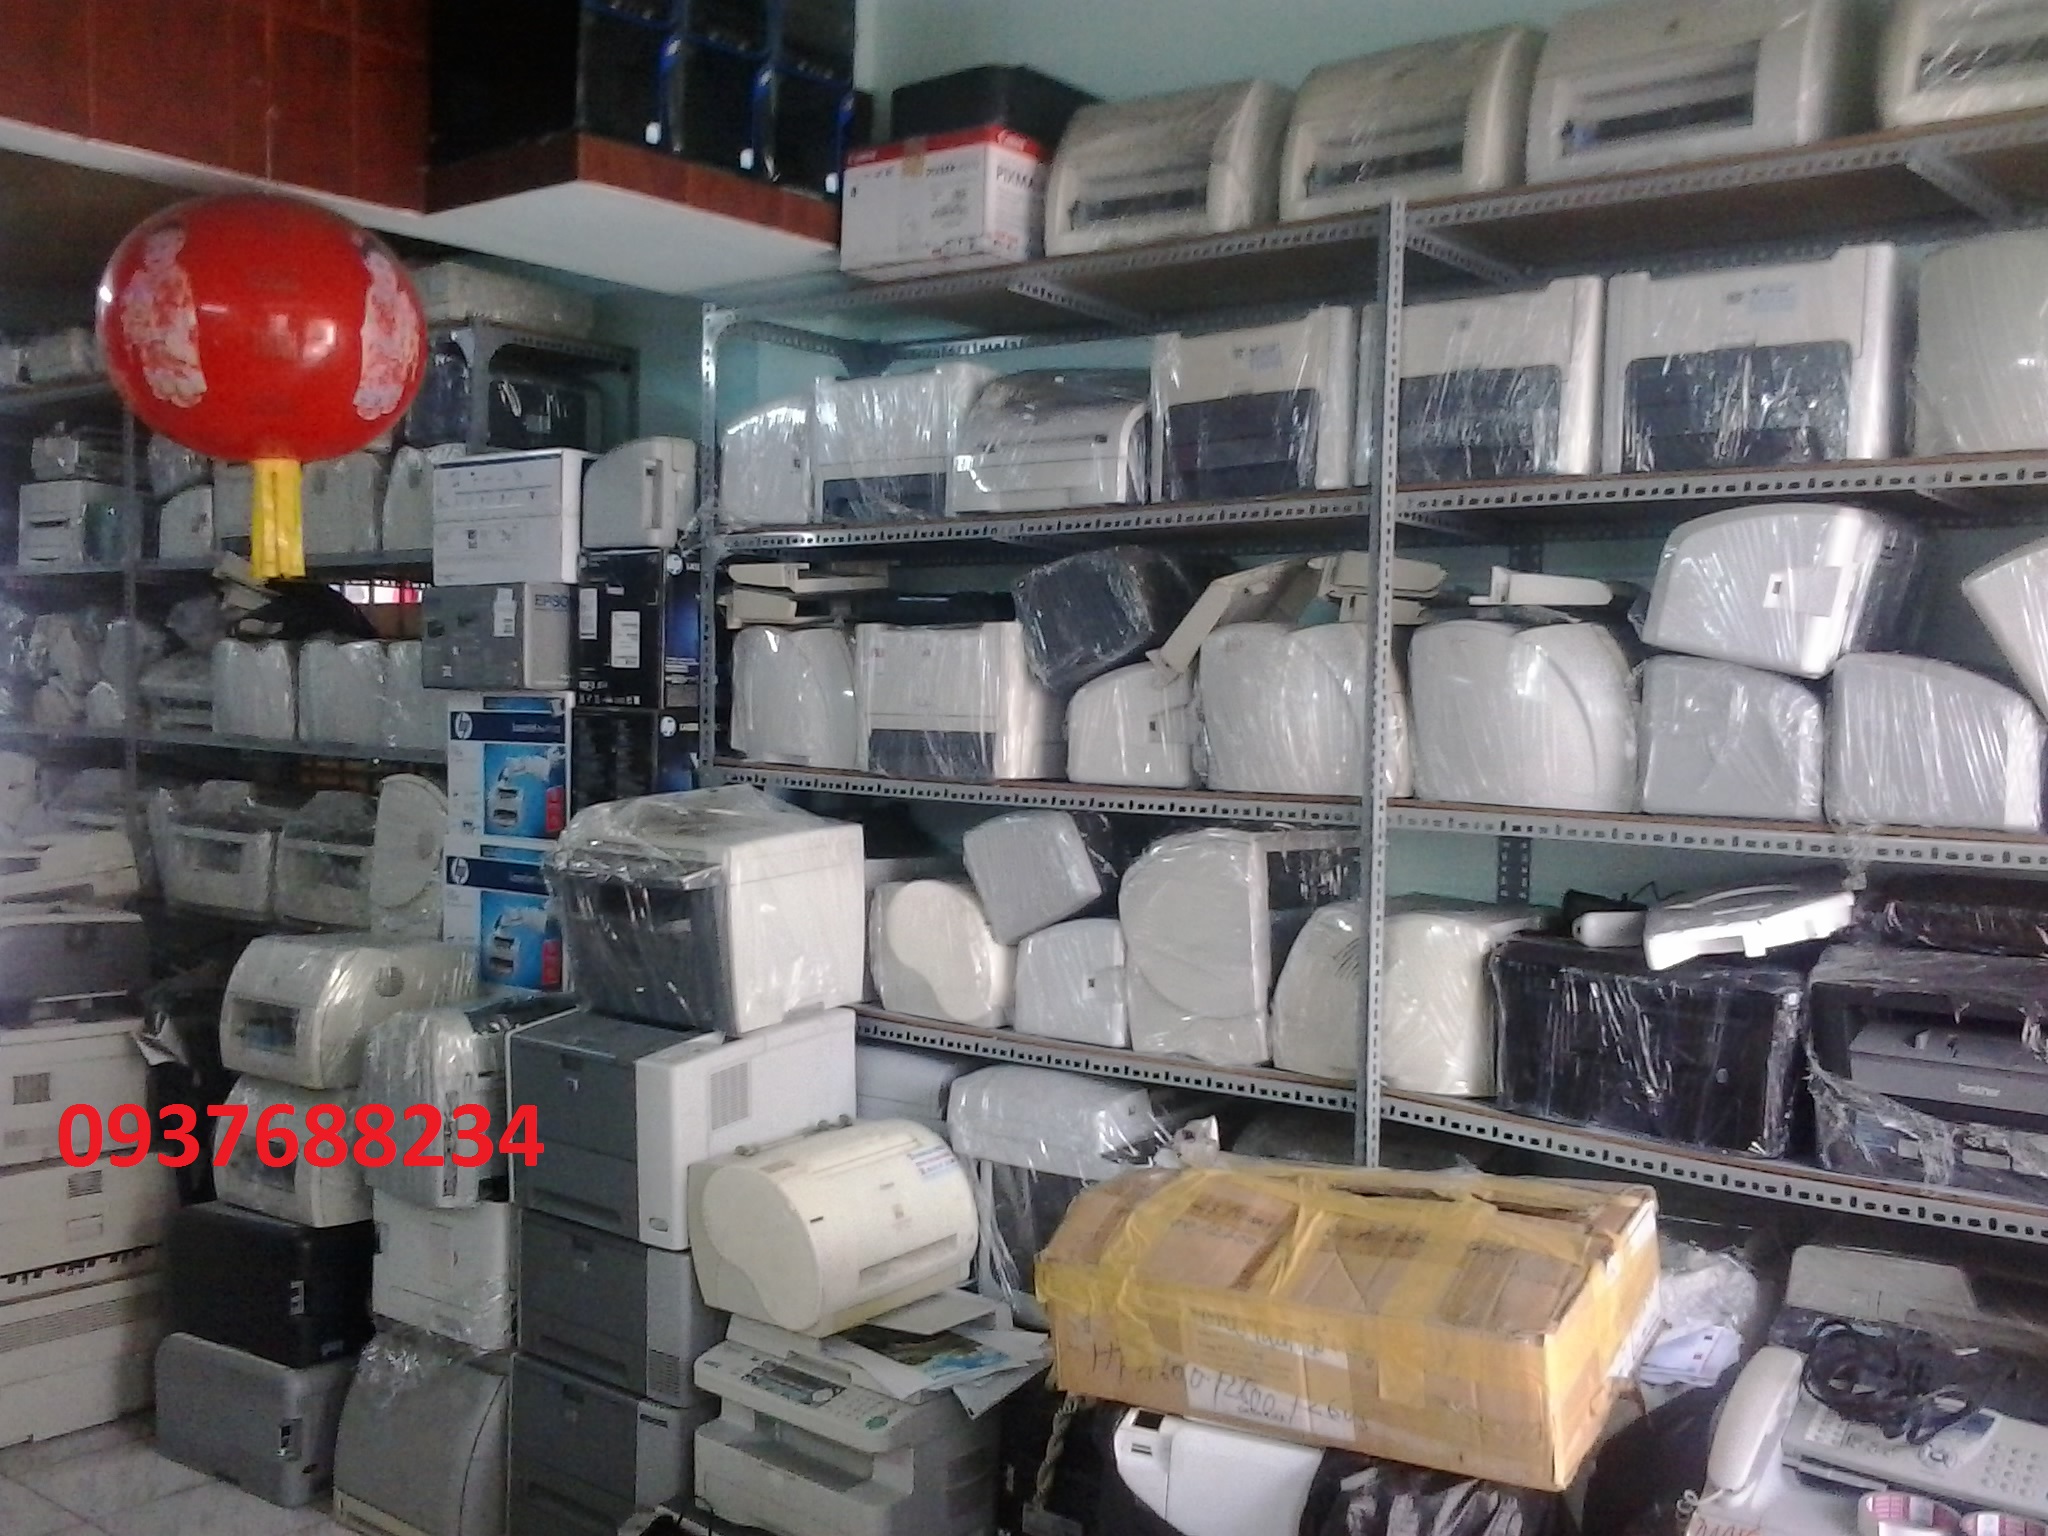 Huy Thuận cung cấp tất cả các dòng máy in cũ,máy in nội địa chất lượng như mới